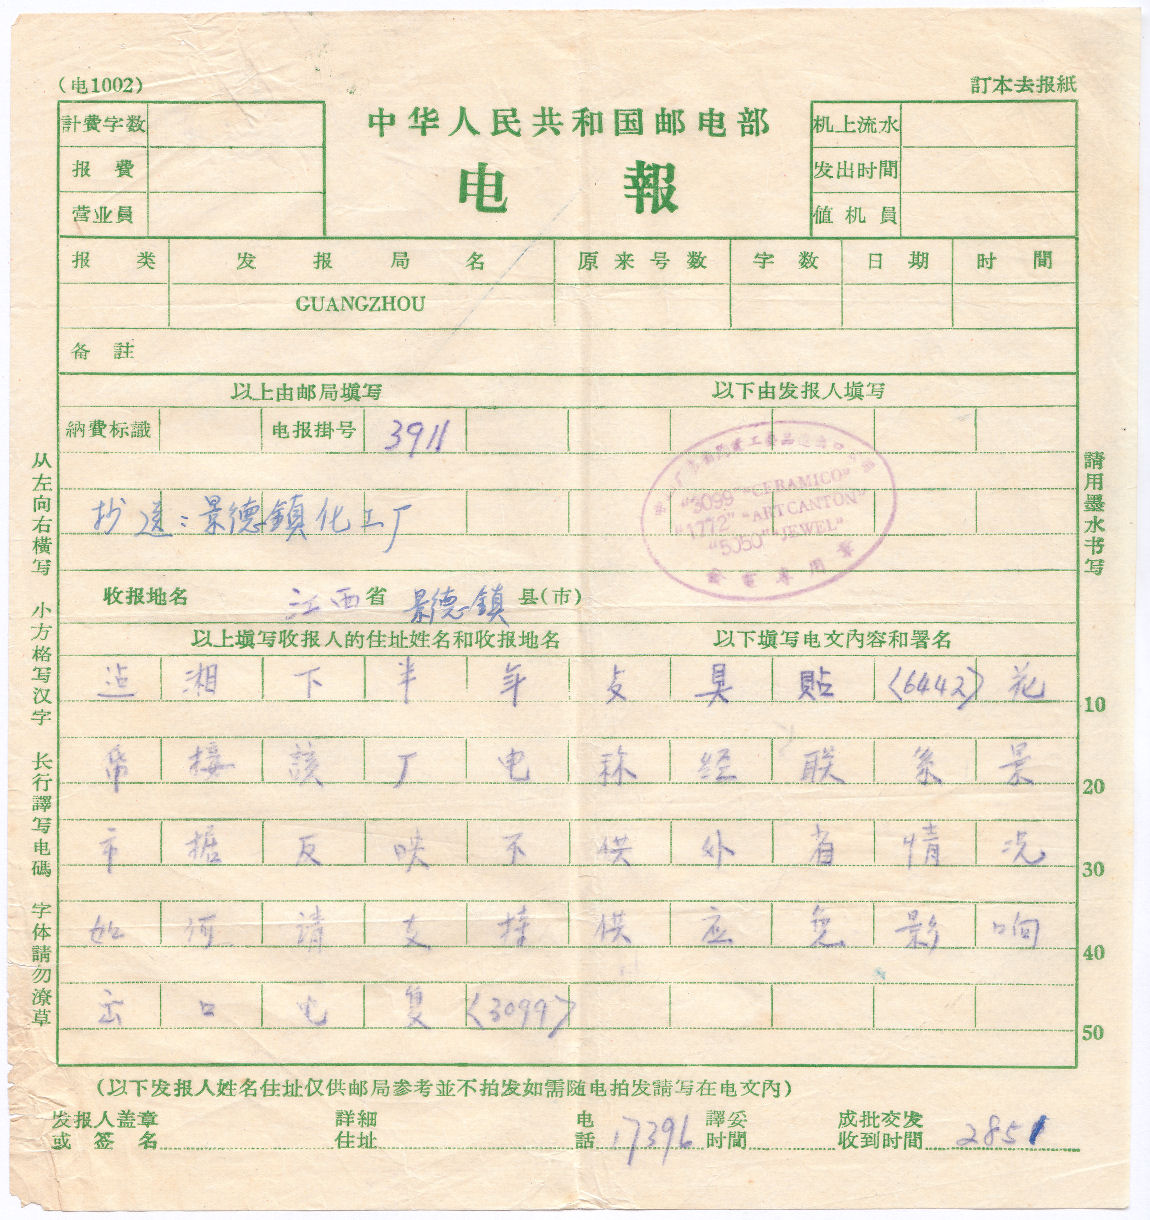 Guangzhou-Form 1002